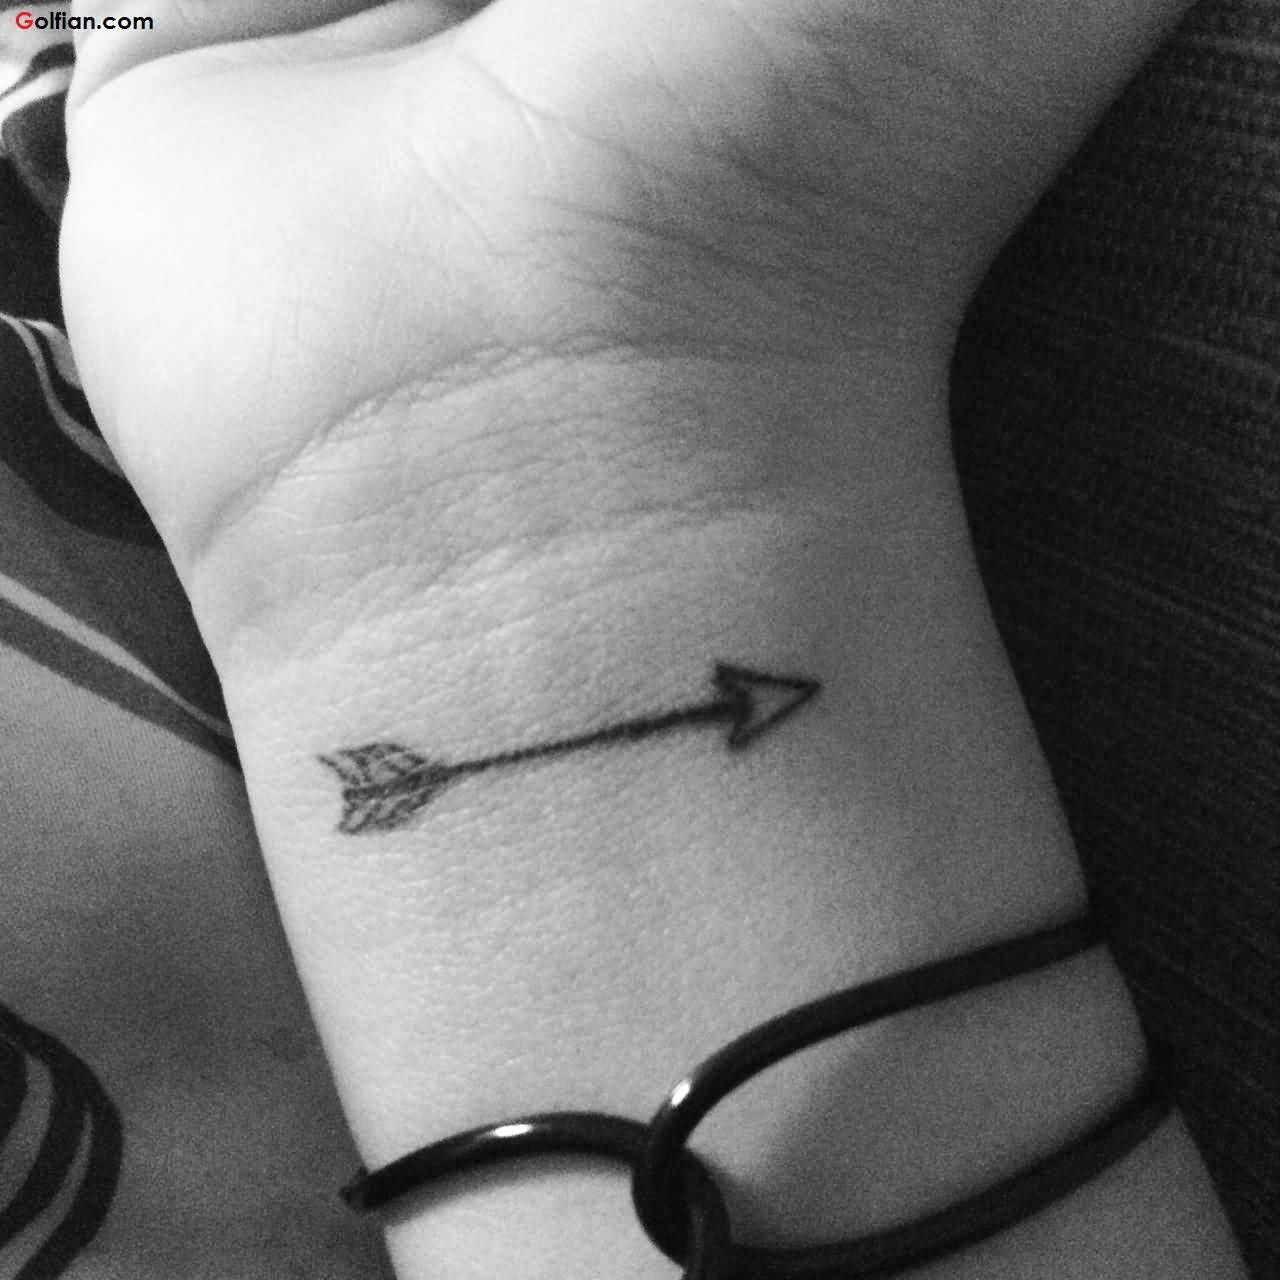 Marvelous Small Arrow tattoo On Wrist